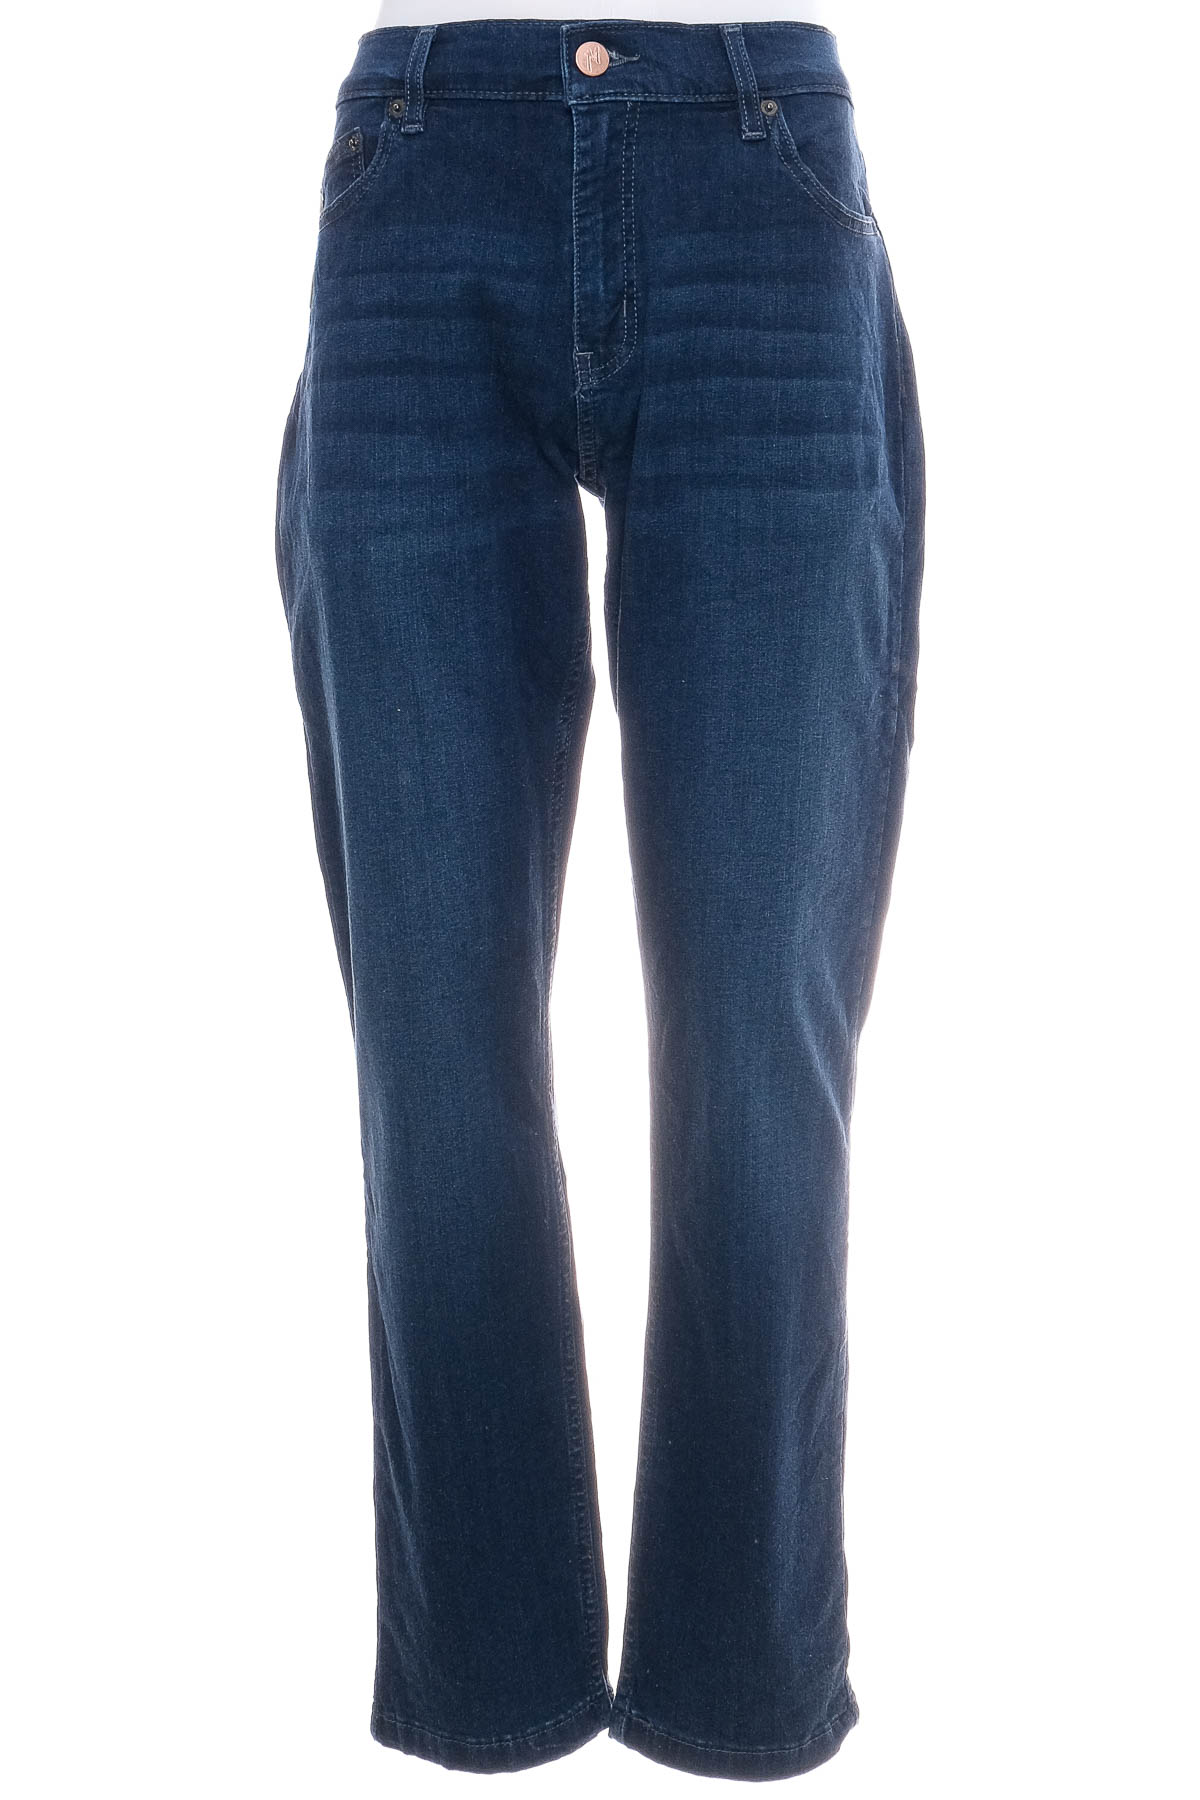 Jeans pentru bărbăți - Mugsy Jeans - 0